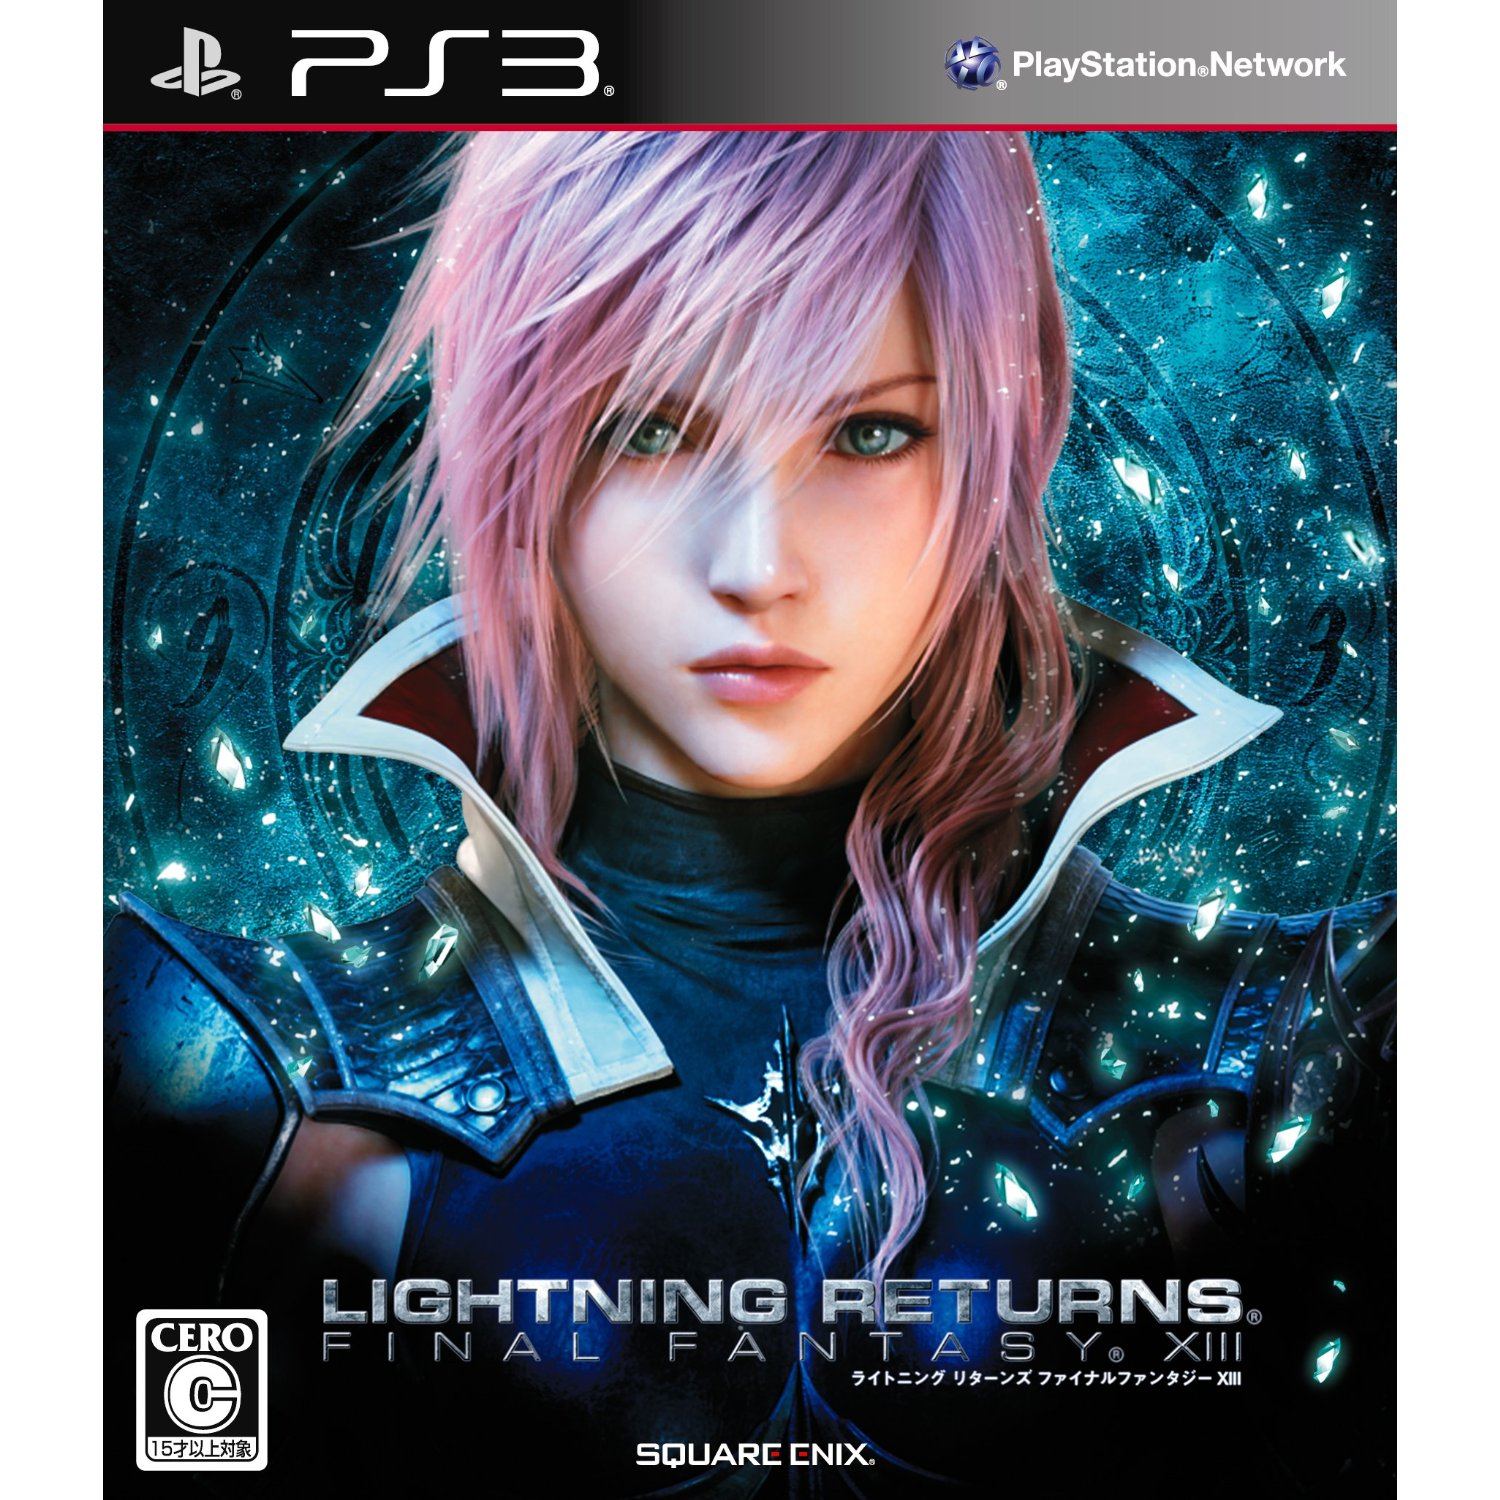 Lightning Returns Final Fantasy Xiii For Playstation 3